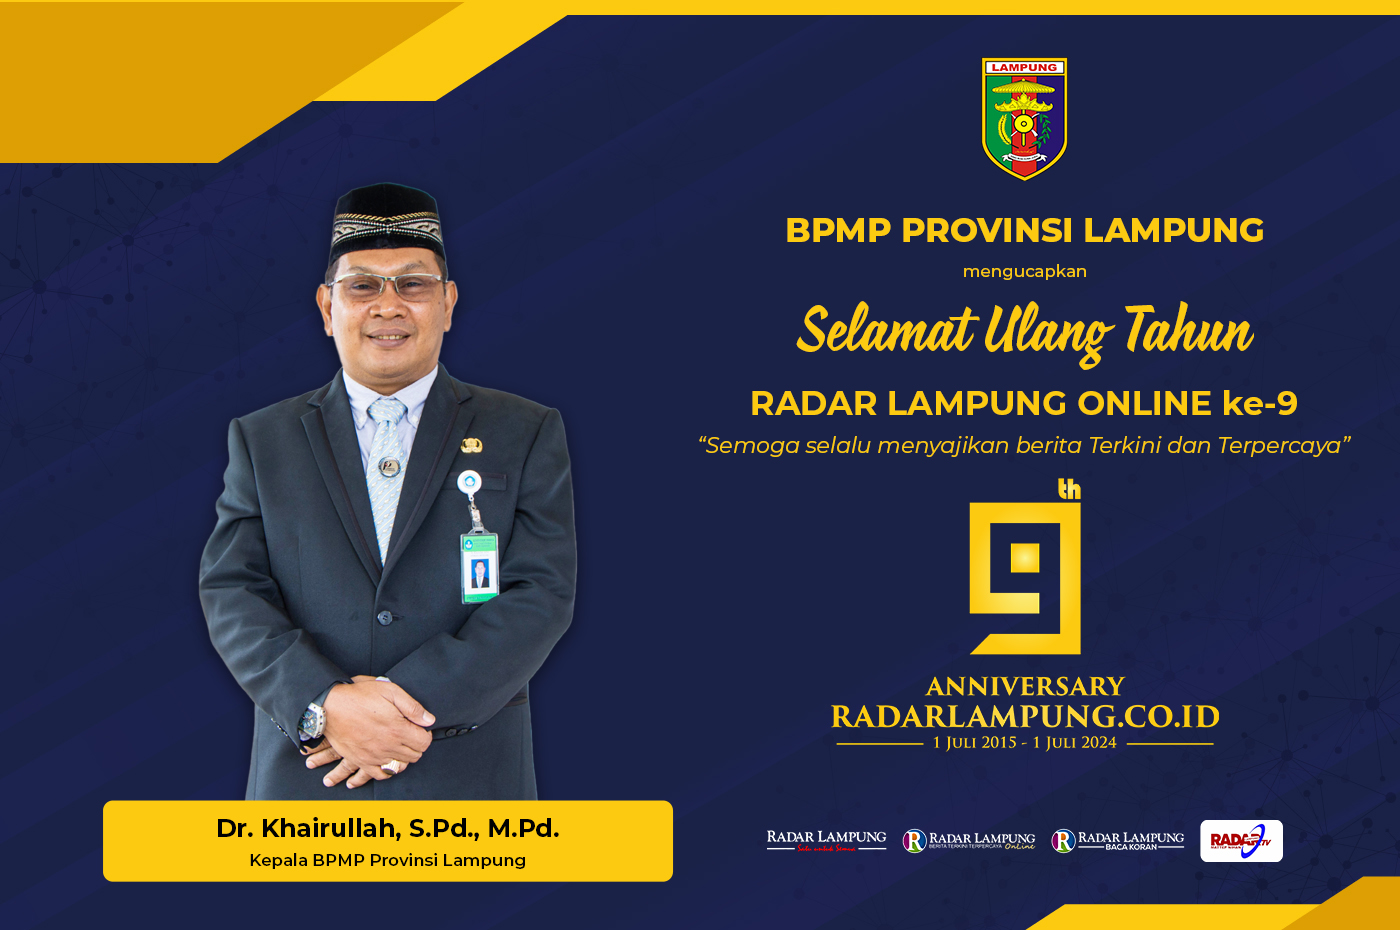 BPMP Provinsi Lampung Mengucapkan Selamat Ulang Tahun ke-9 Radar Lampung Online